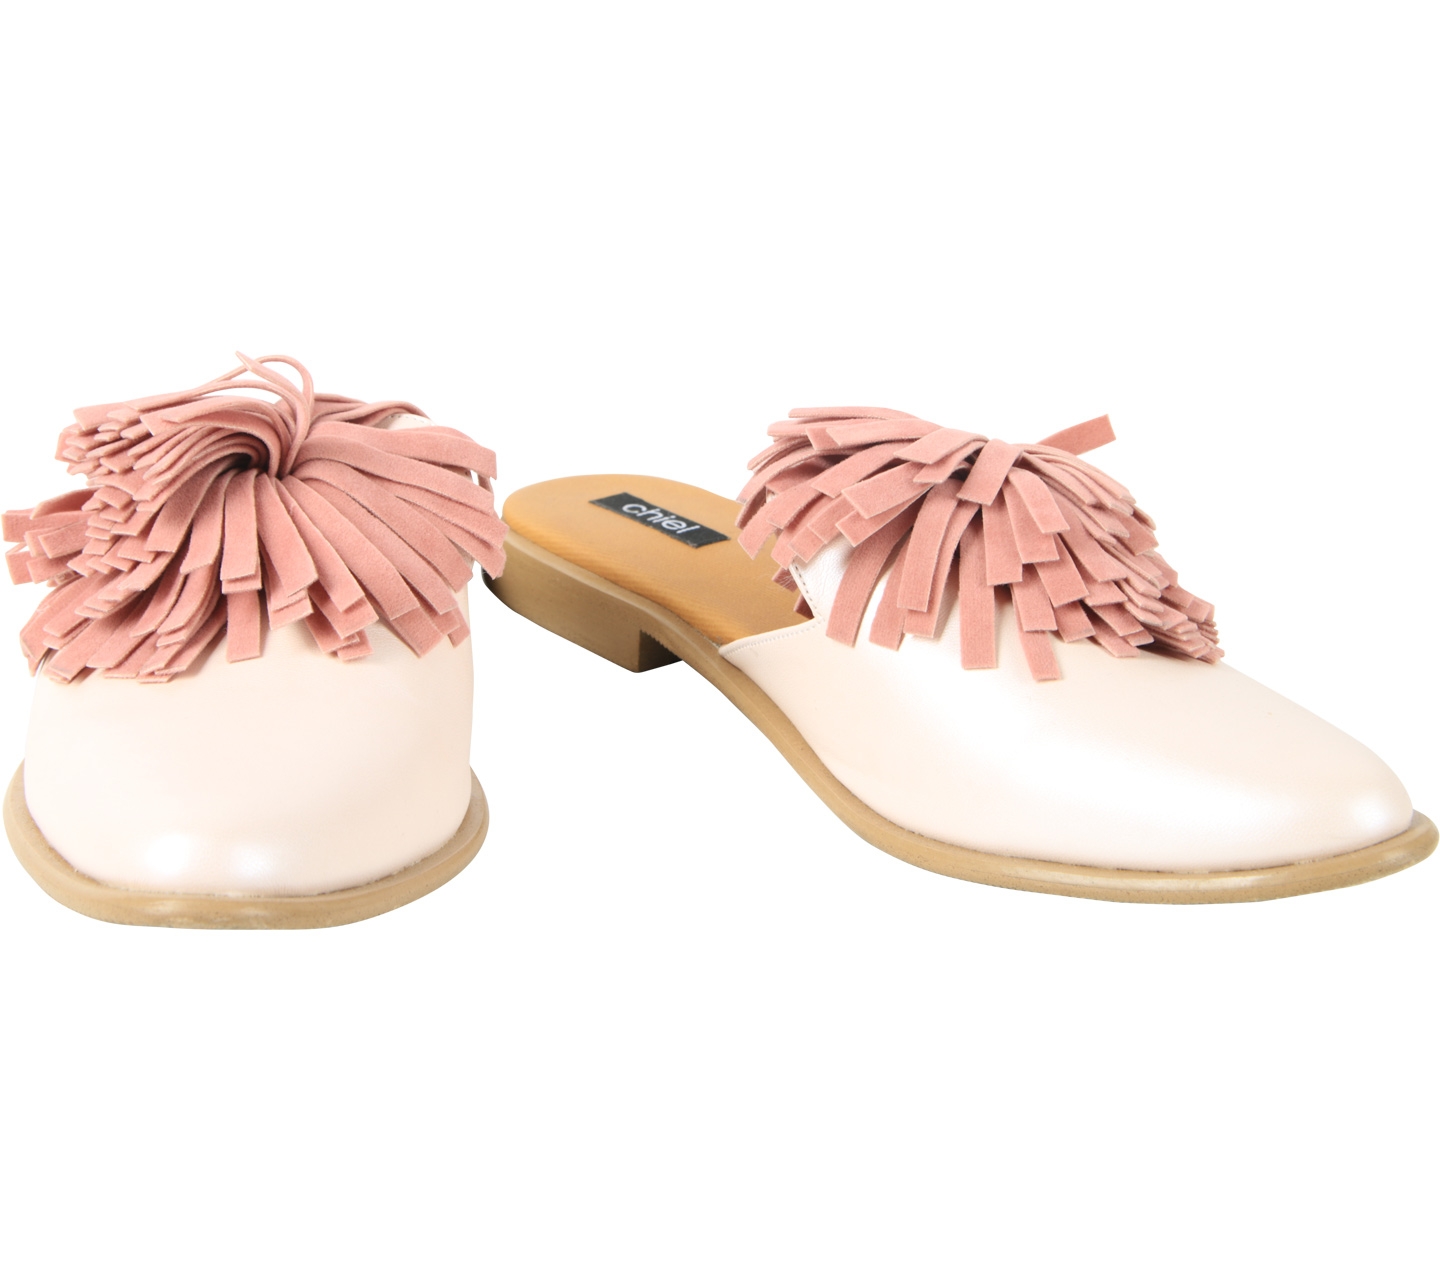 Chiel Pink Fringe Sandals